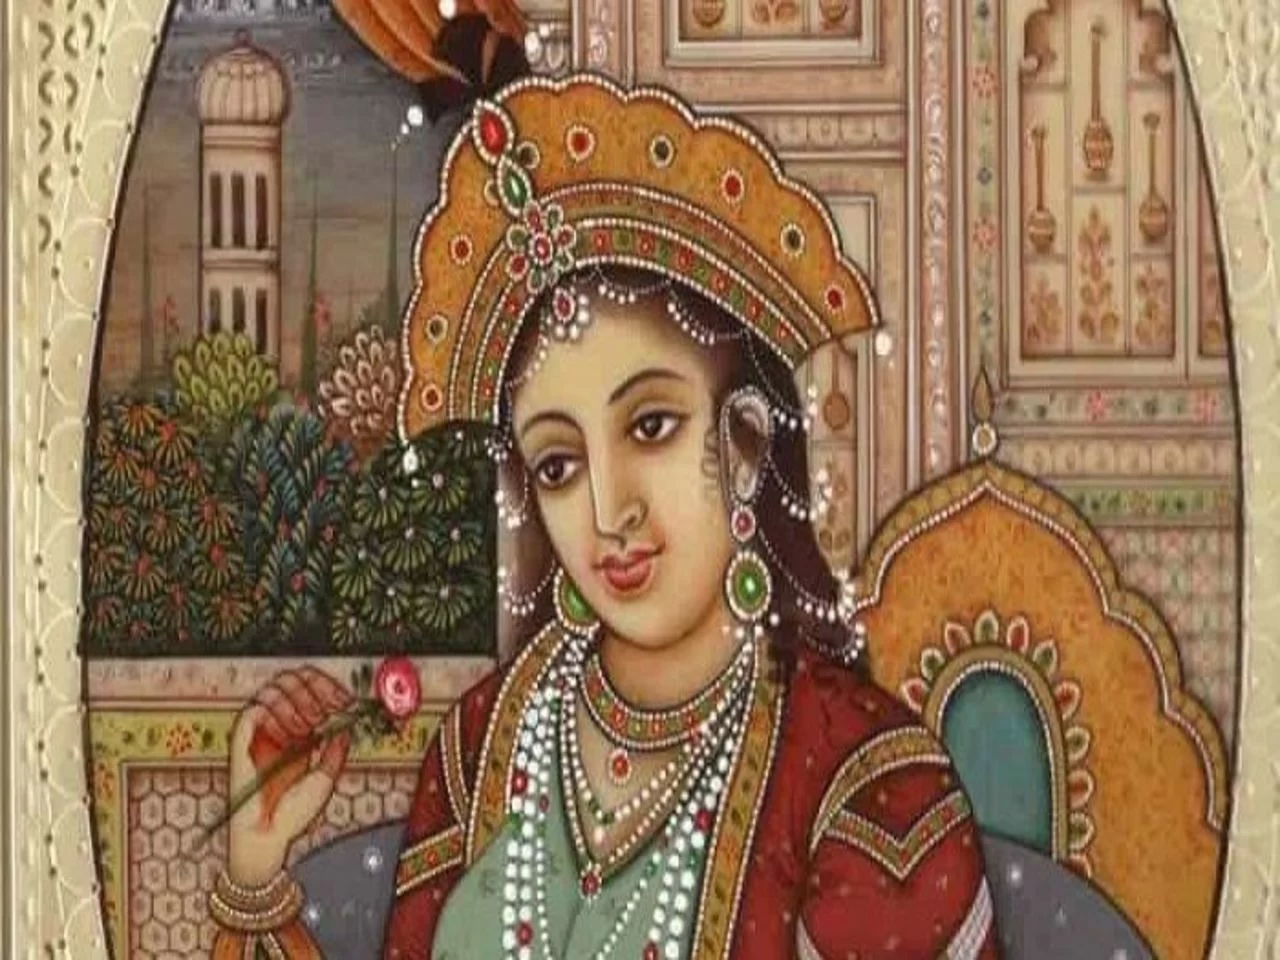 mumtaz mahal1 jpg इस मुगल महिला से सलाह लेकर अपनी रणनीति बनाते थे मुगल सम्राट जहांगीर